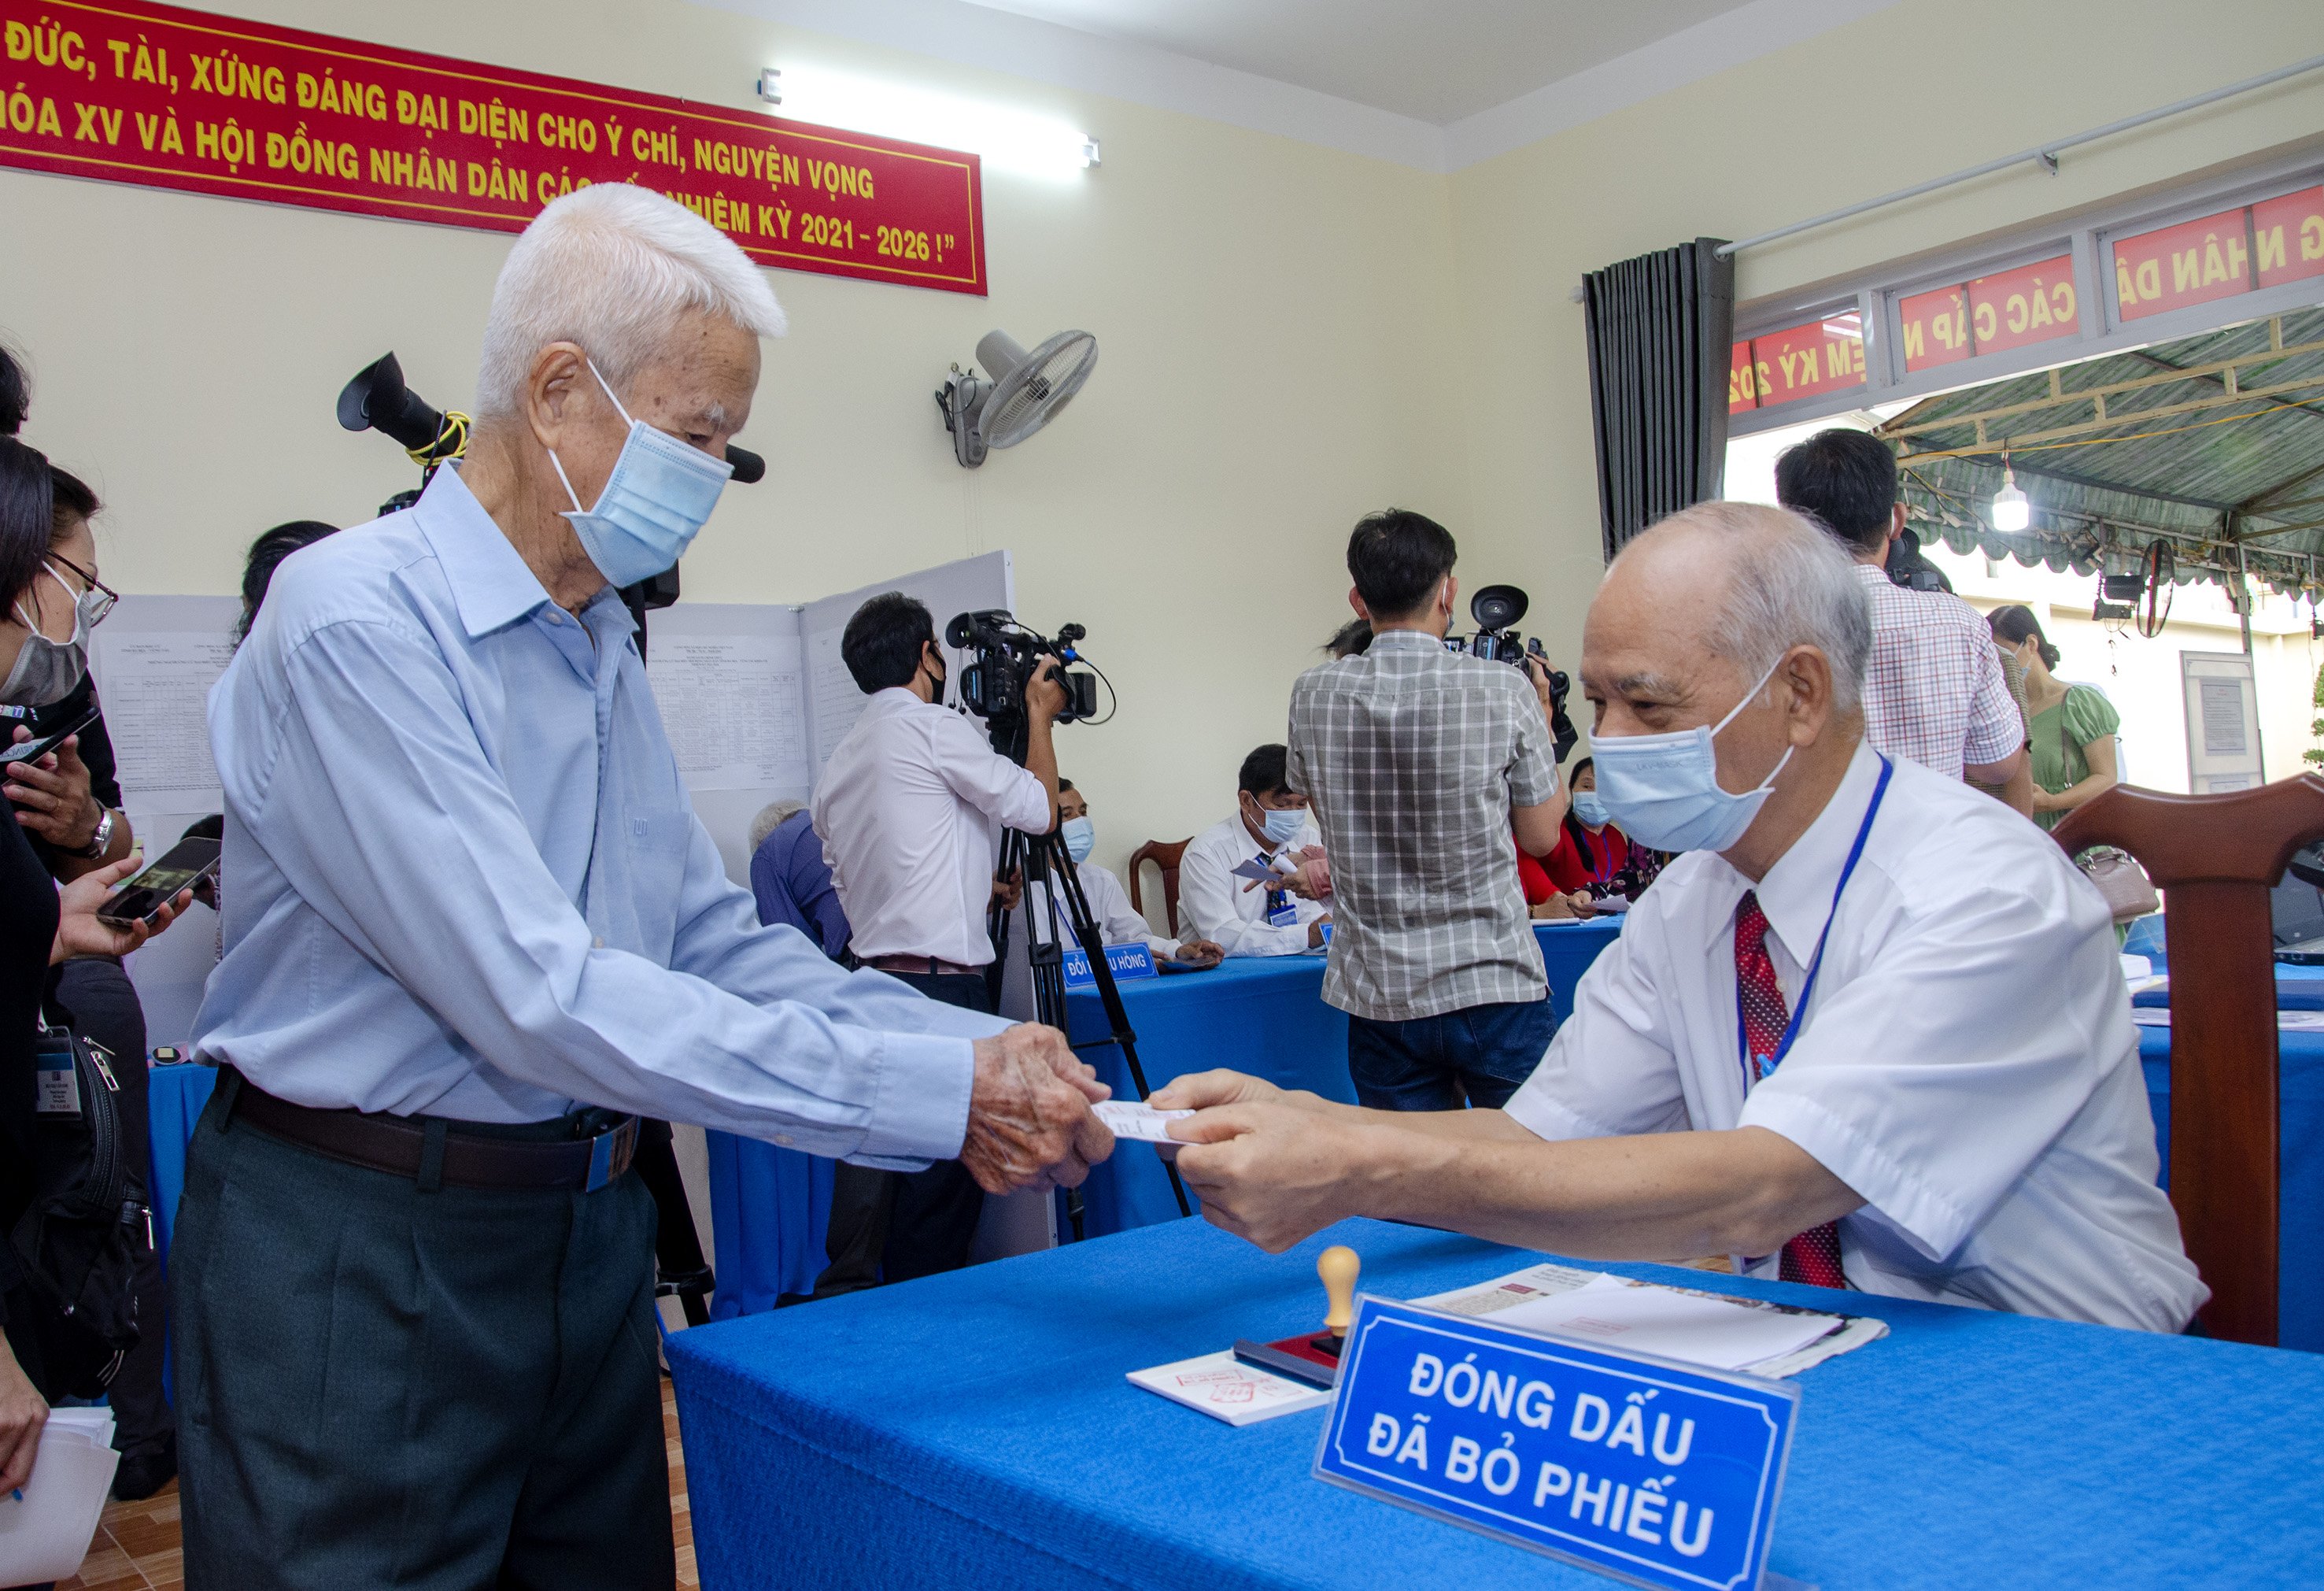 Cử tri Đinh Văn Quý, 88 tuổi nhận phiếu đóng dấu đã bầu cử tại Khu vực bỏ phiếu số 3, phường 2, TP.Vũng Tàu.